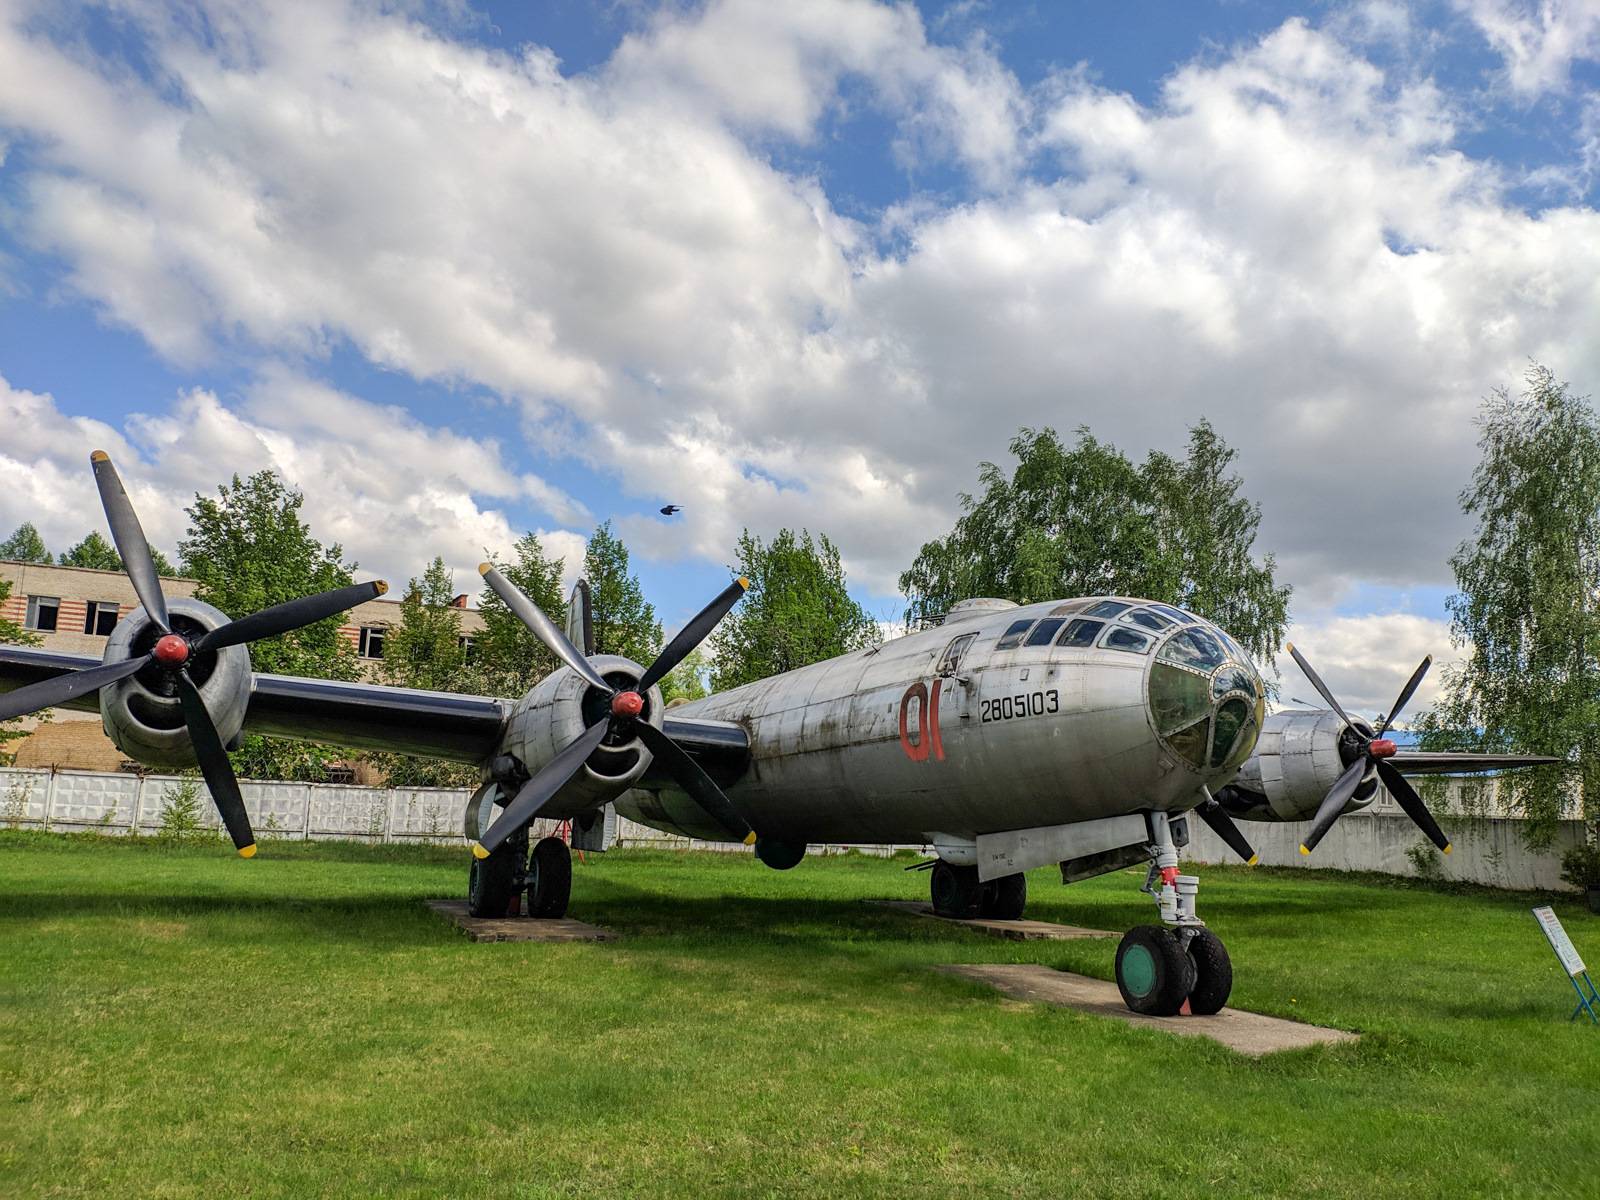 Экскурсии в музей военно-воздушных сил в монино и стоимость экскурсий в музей авиации в монино